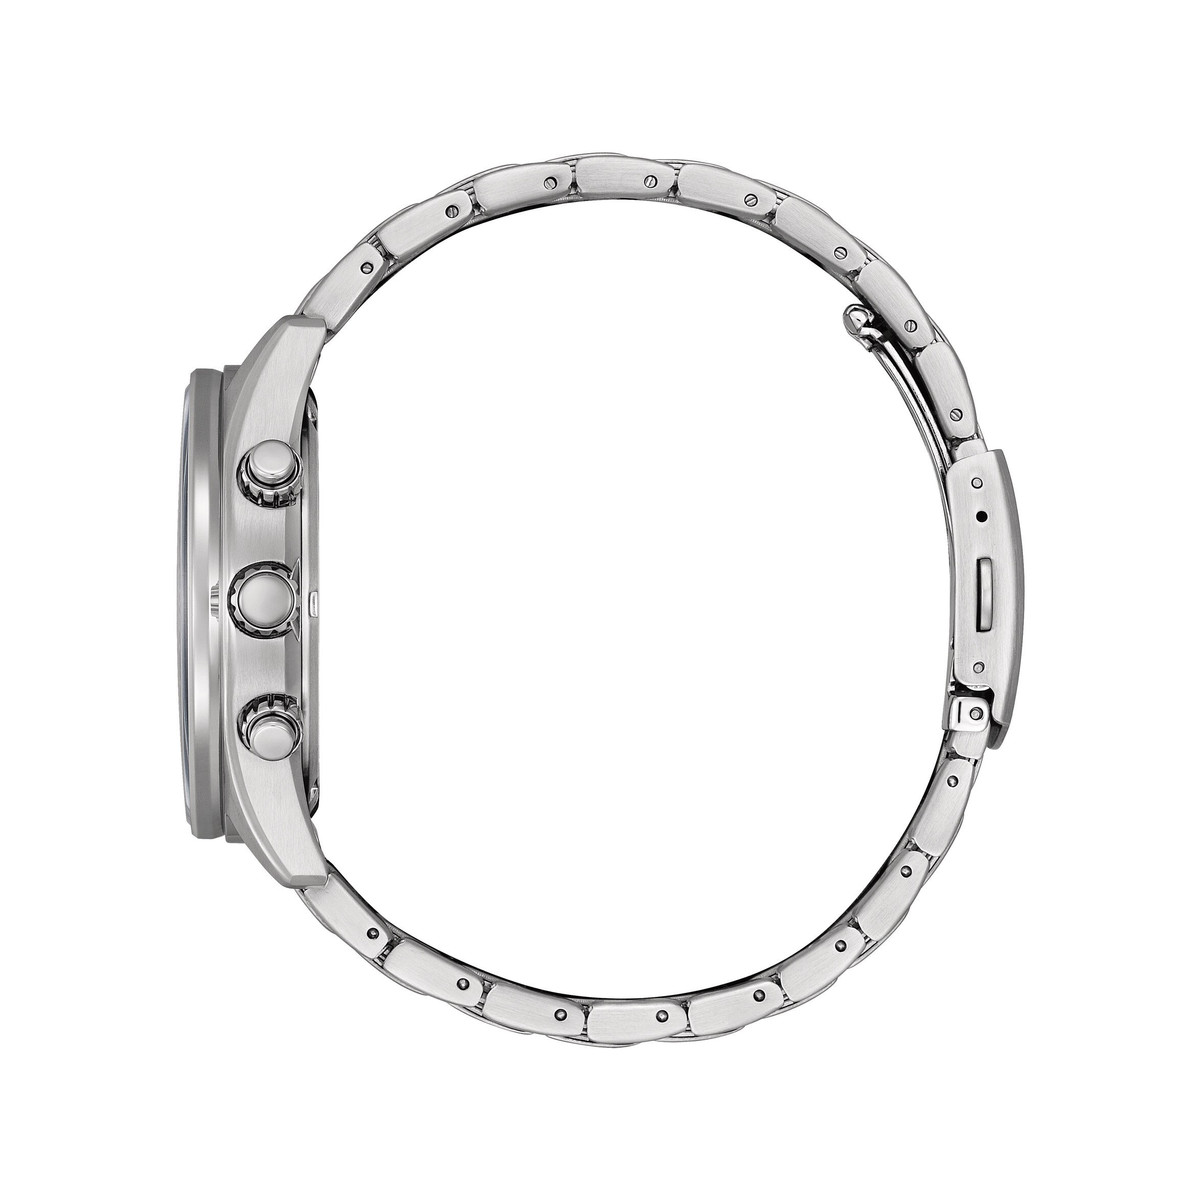 Montre CITIZEN platform urban chronograph homme eco-drive bracelet acier gris - vue 2